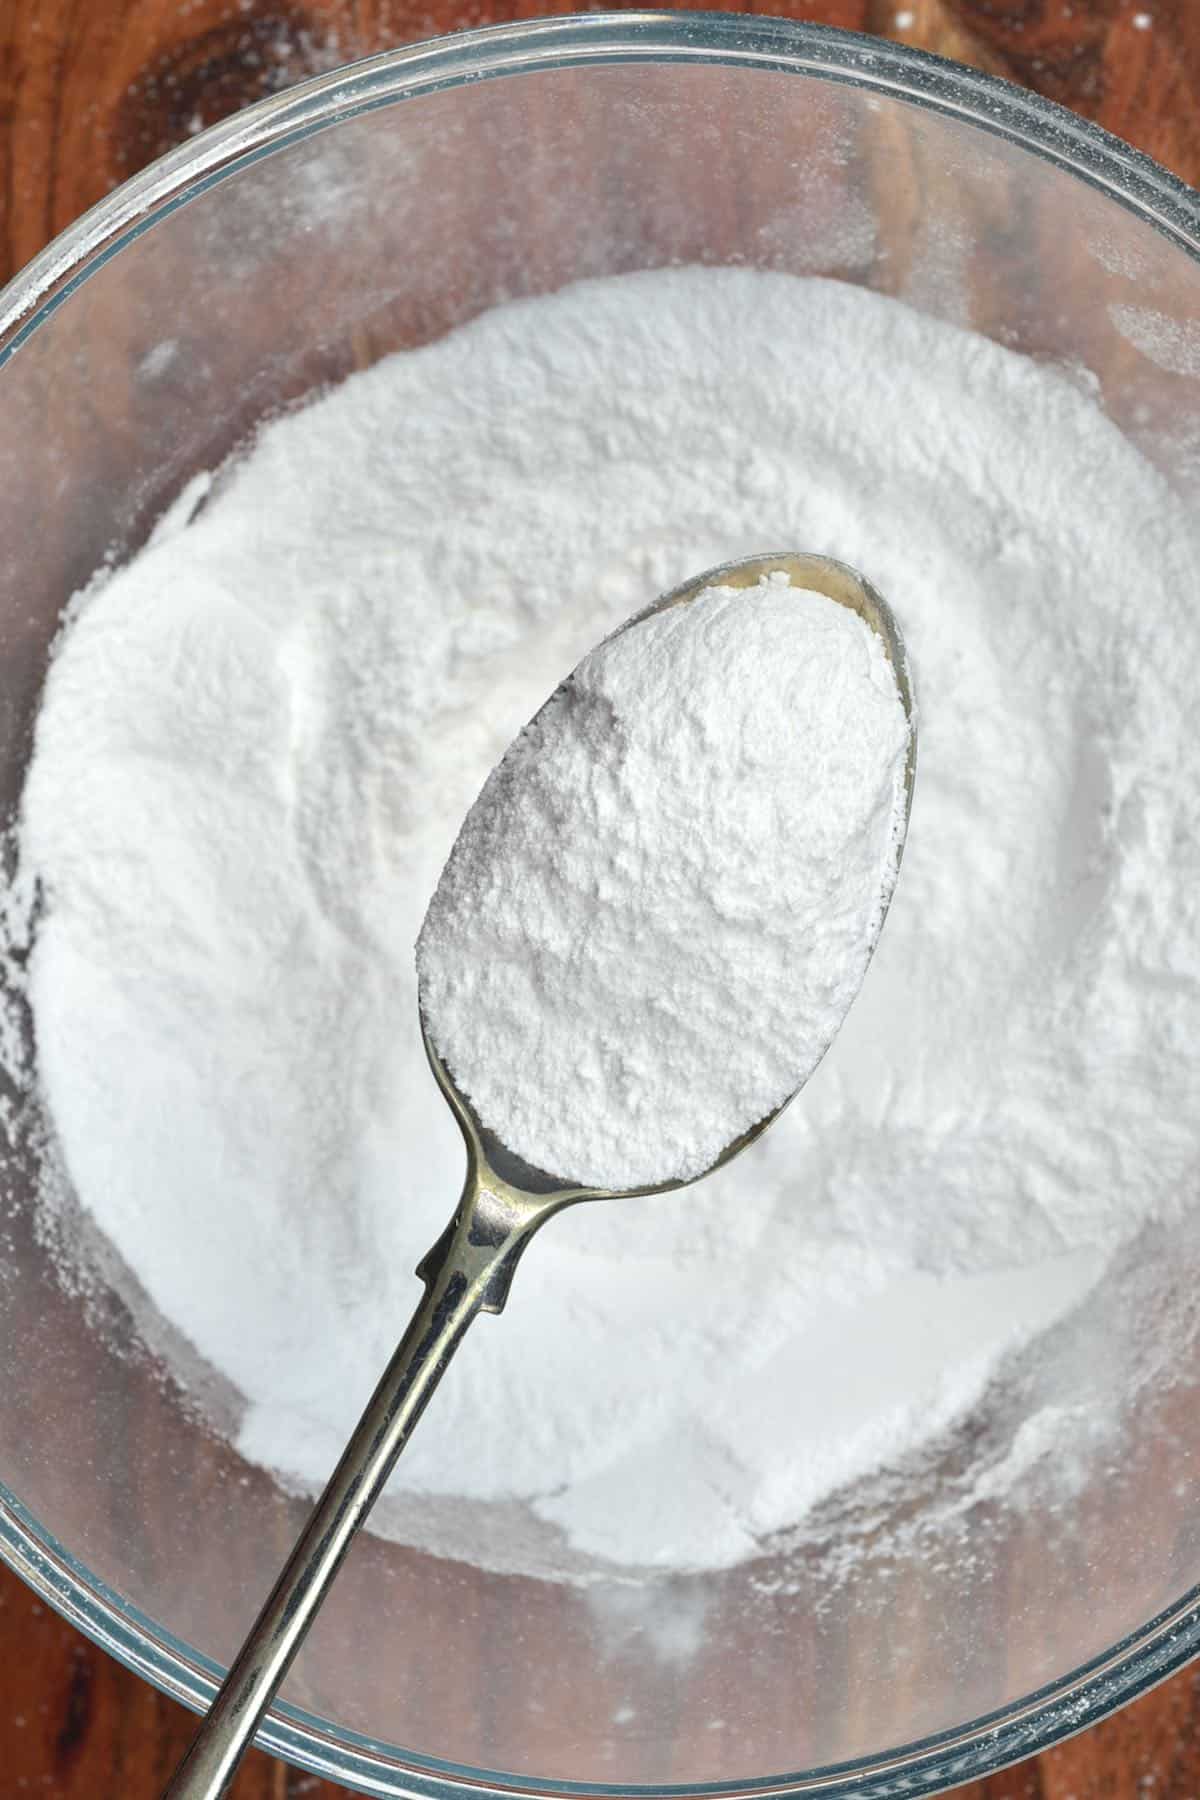 A spoonful of powderd sugar